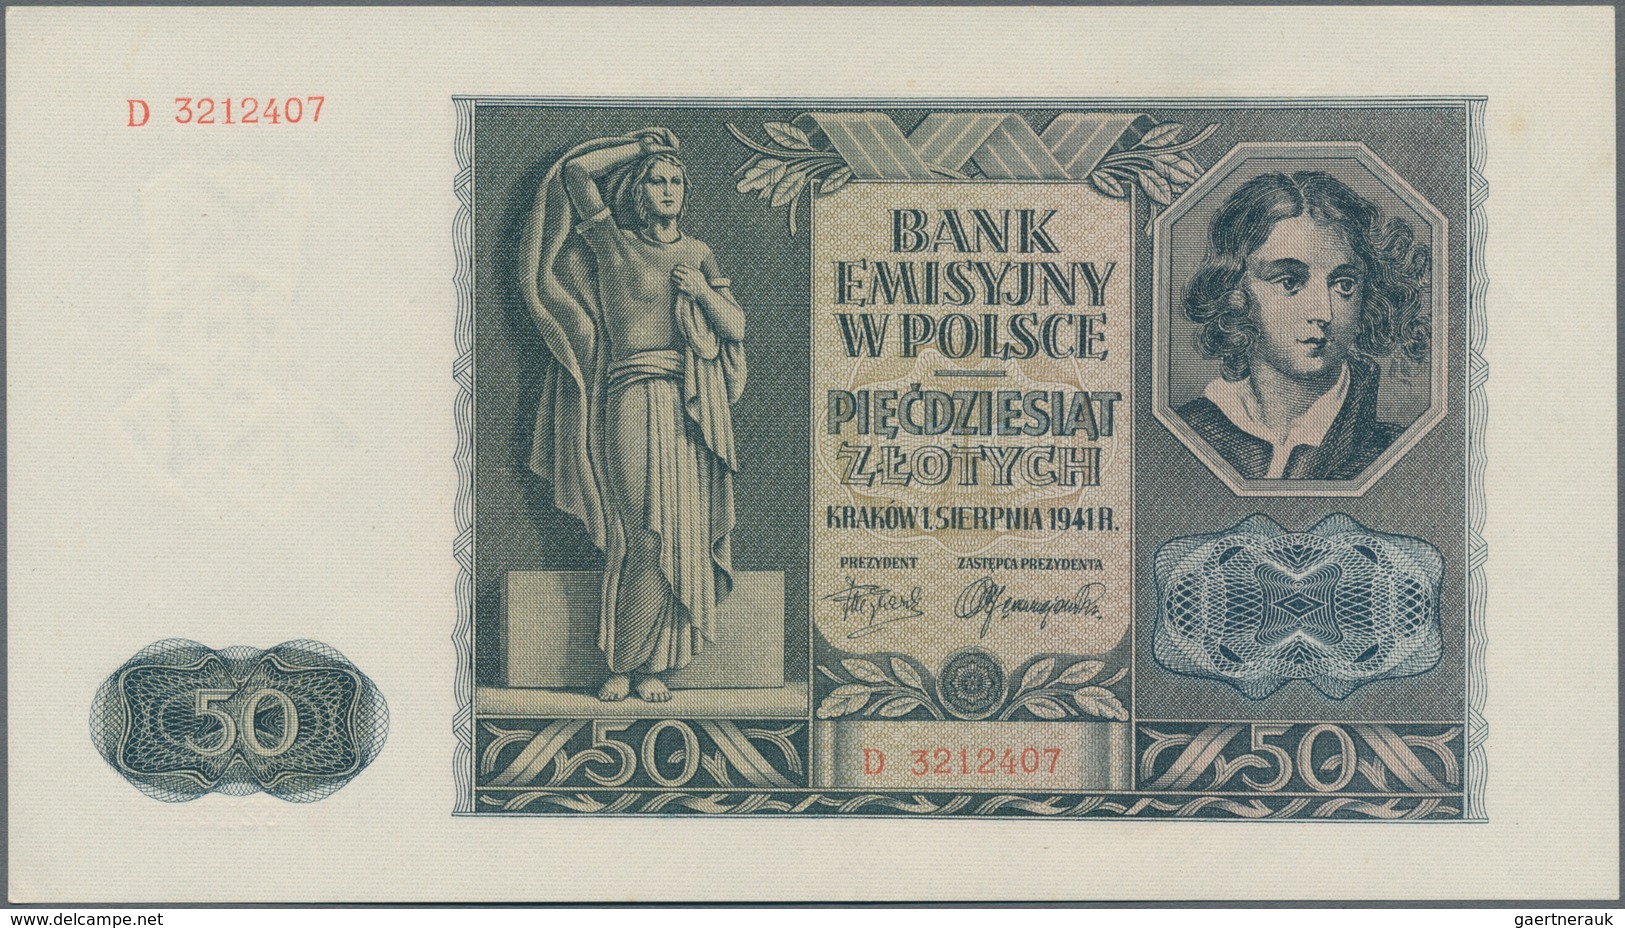 Deutschland - Nebengebiete Deutsches Reich: Generalgouvernement Polen, Lot mit 11 Banknoten, dabei 1